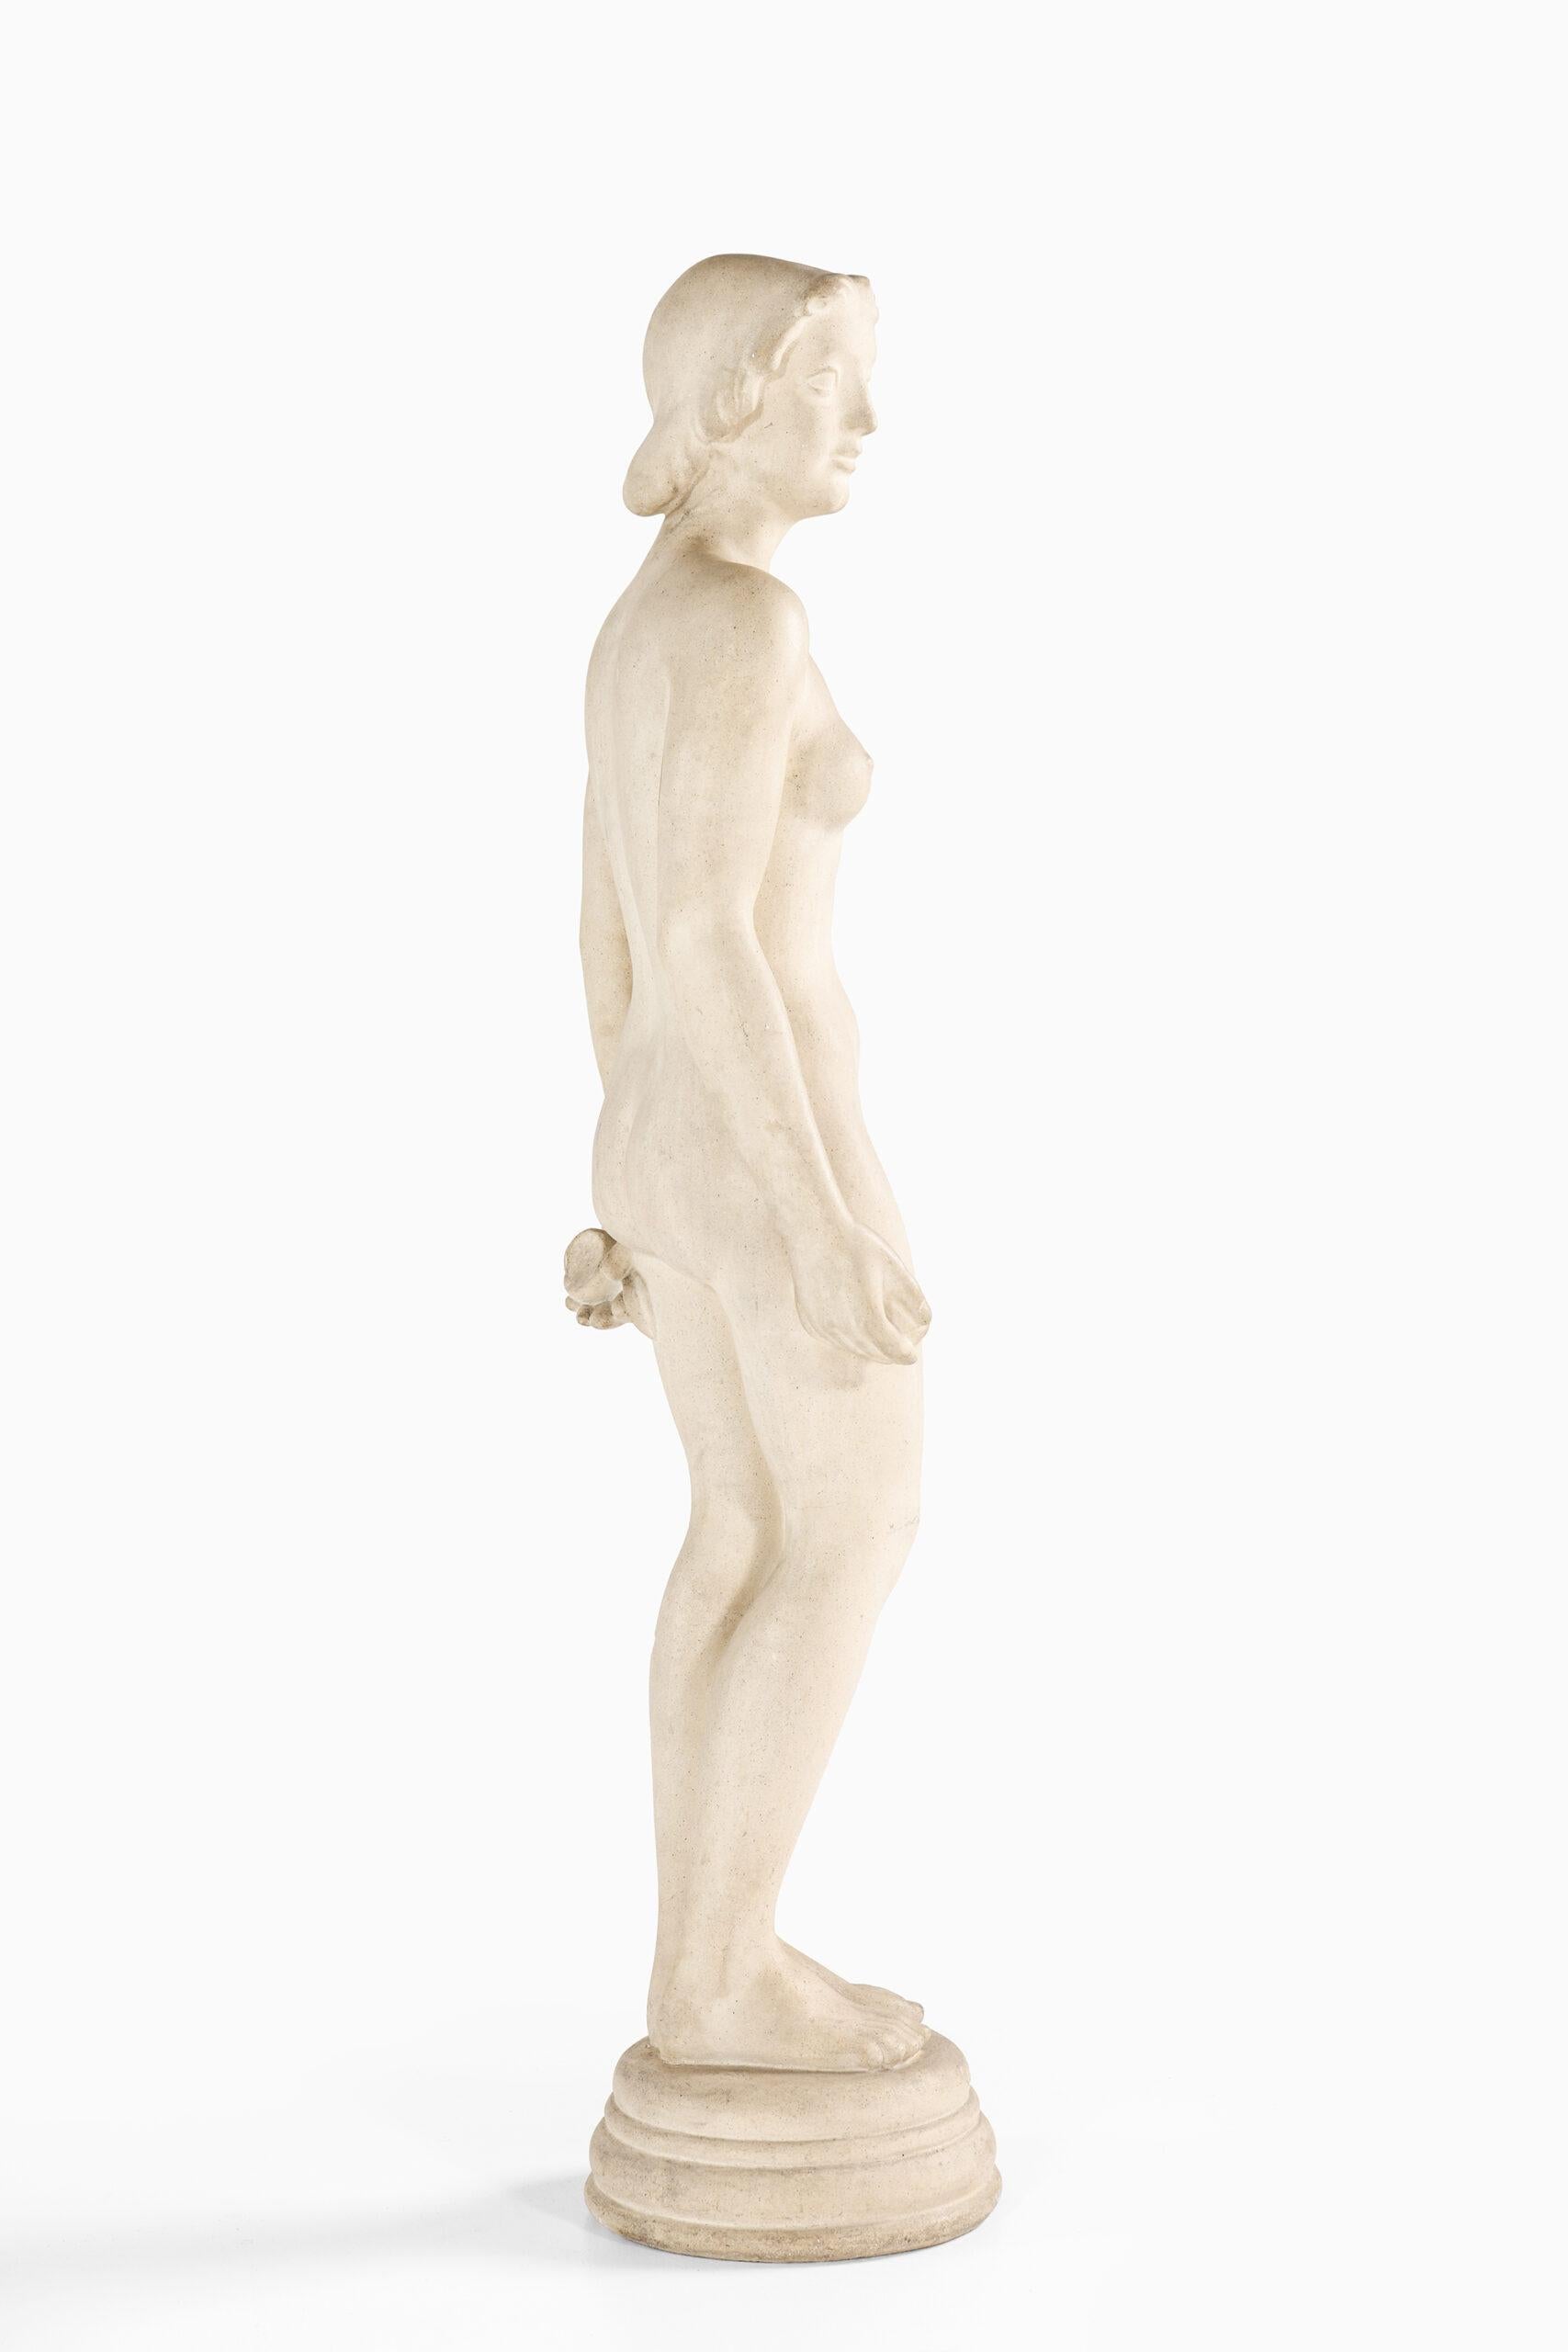 20th Century Mathilius Schack Elo Garden Sculpture ‘Eva’ Produced in Denmark For Sale